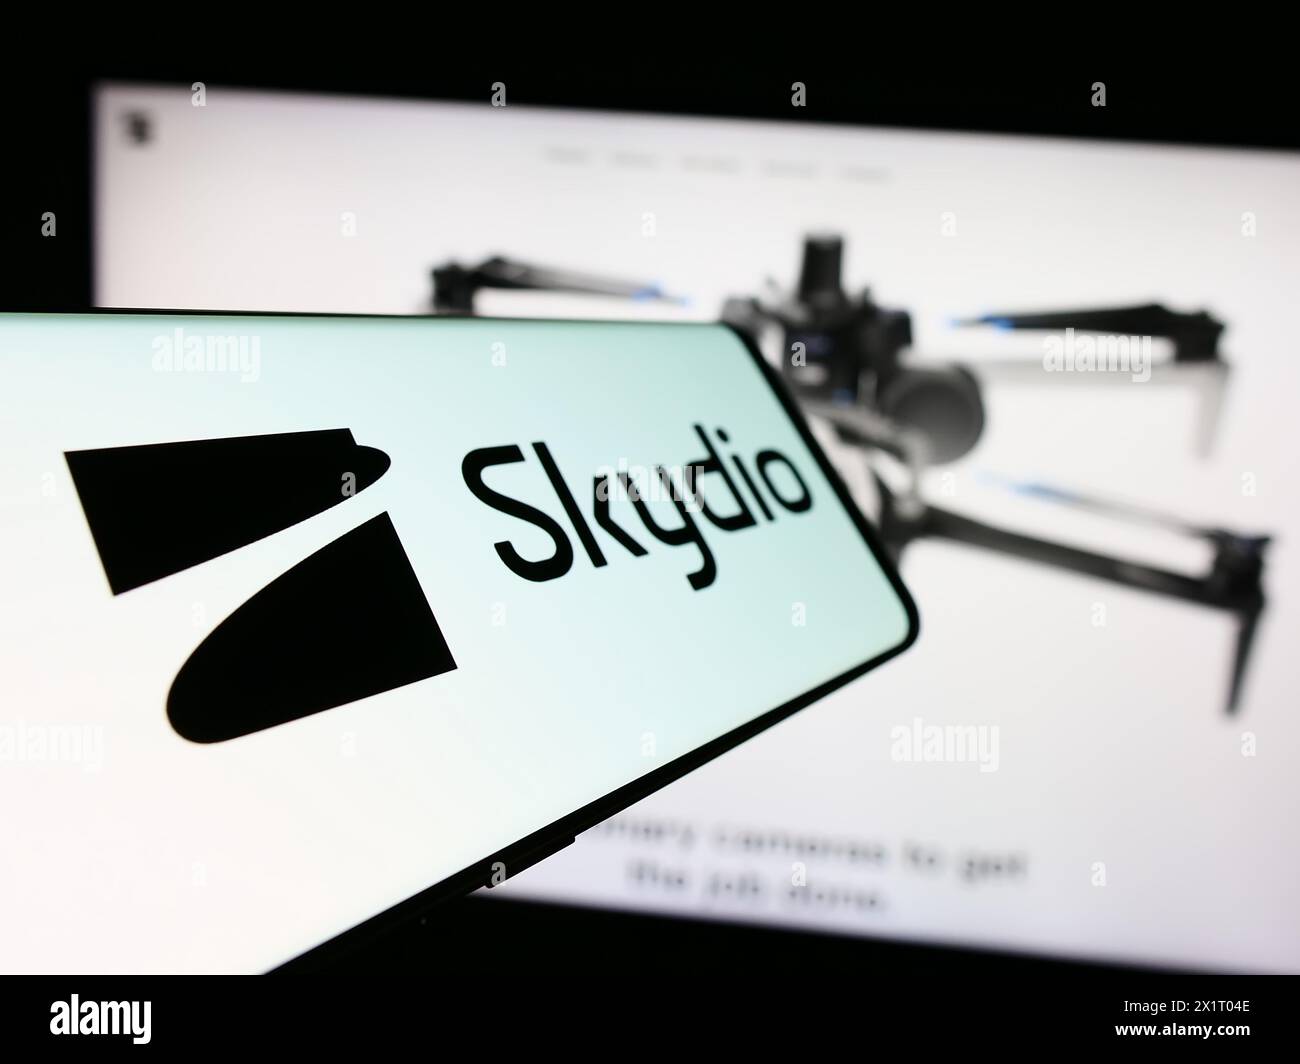 Telefono cellulare con logo della società americana di produzione di droni Skydio Inc. Davanti al sito Web aziendale. Mettere a fuoco la parte centrale sinistra del display del telefono. Foto Stock